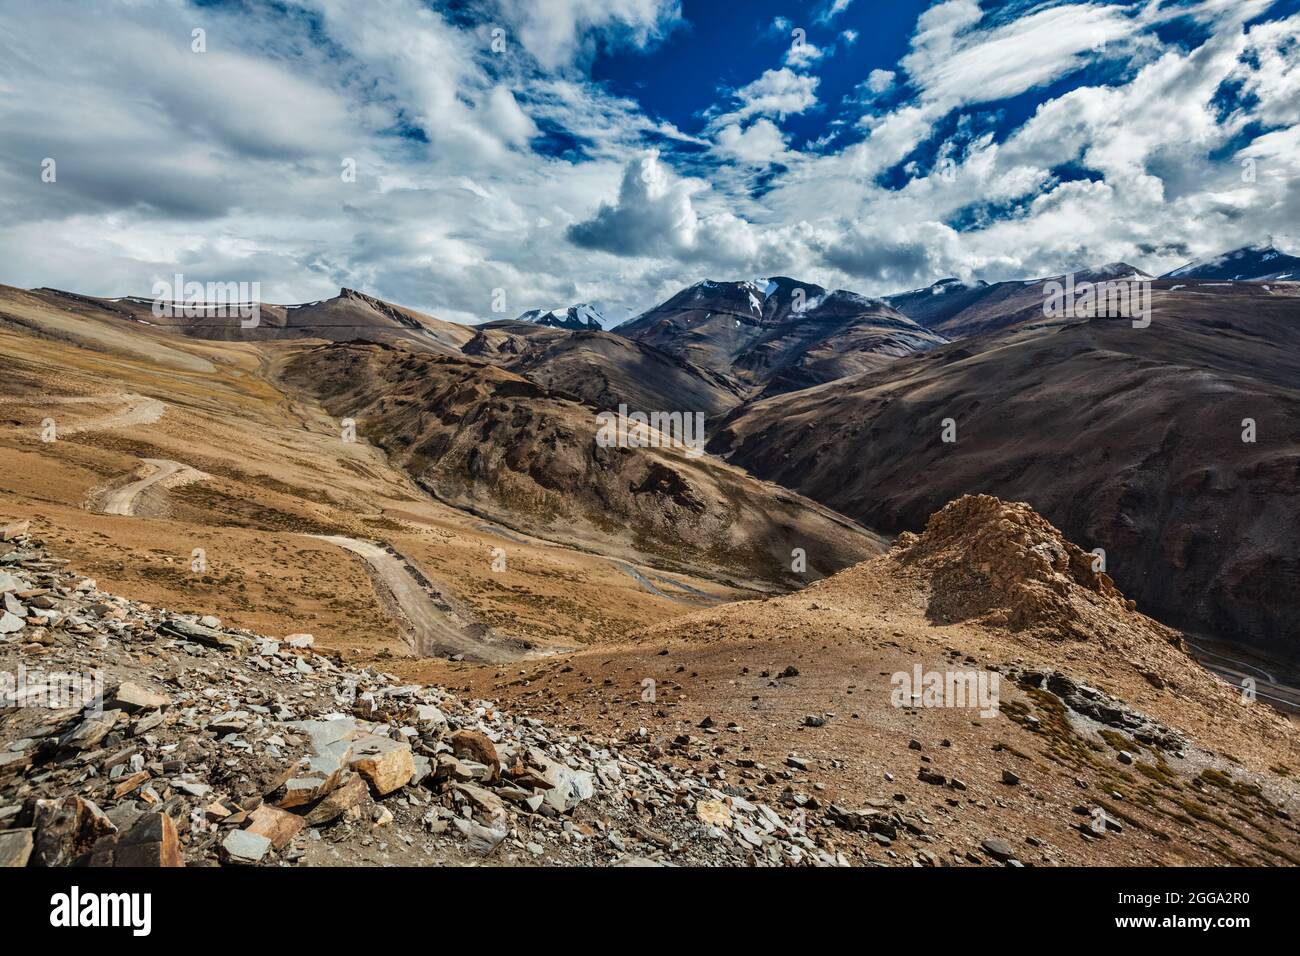 Himalayan landscape near Tanglang-La pass. Ladakh, India Stock Photo